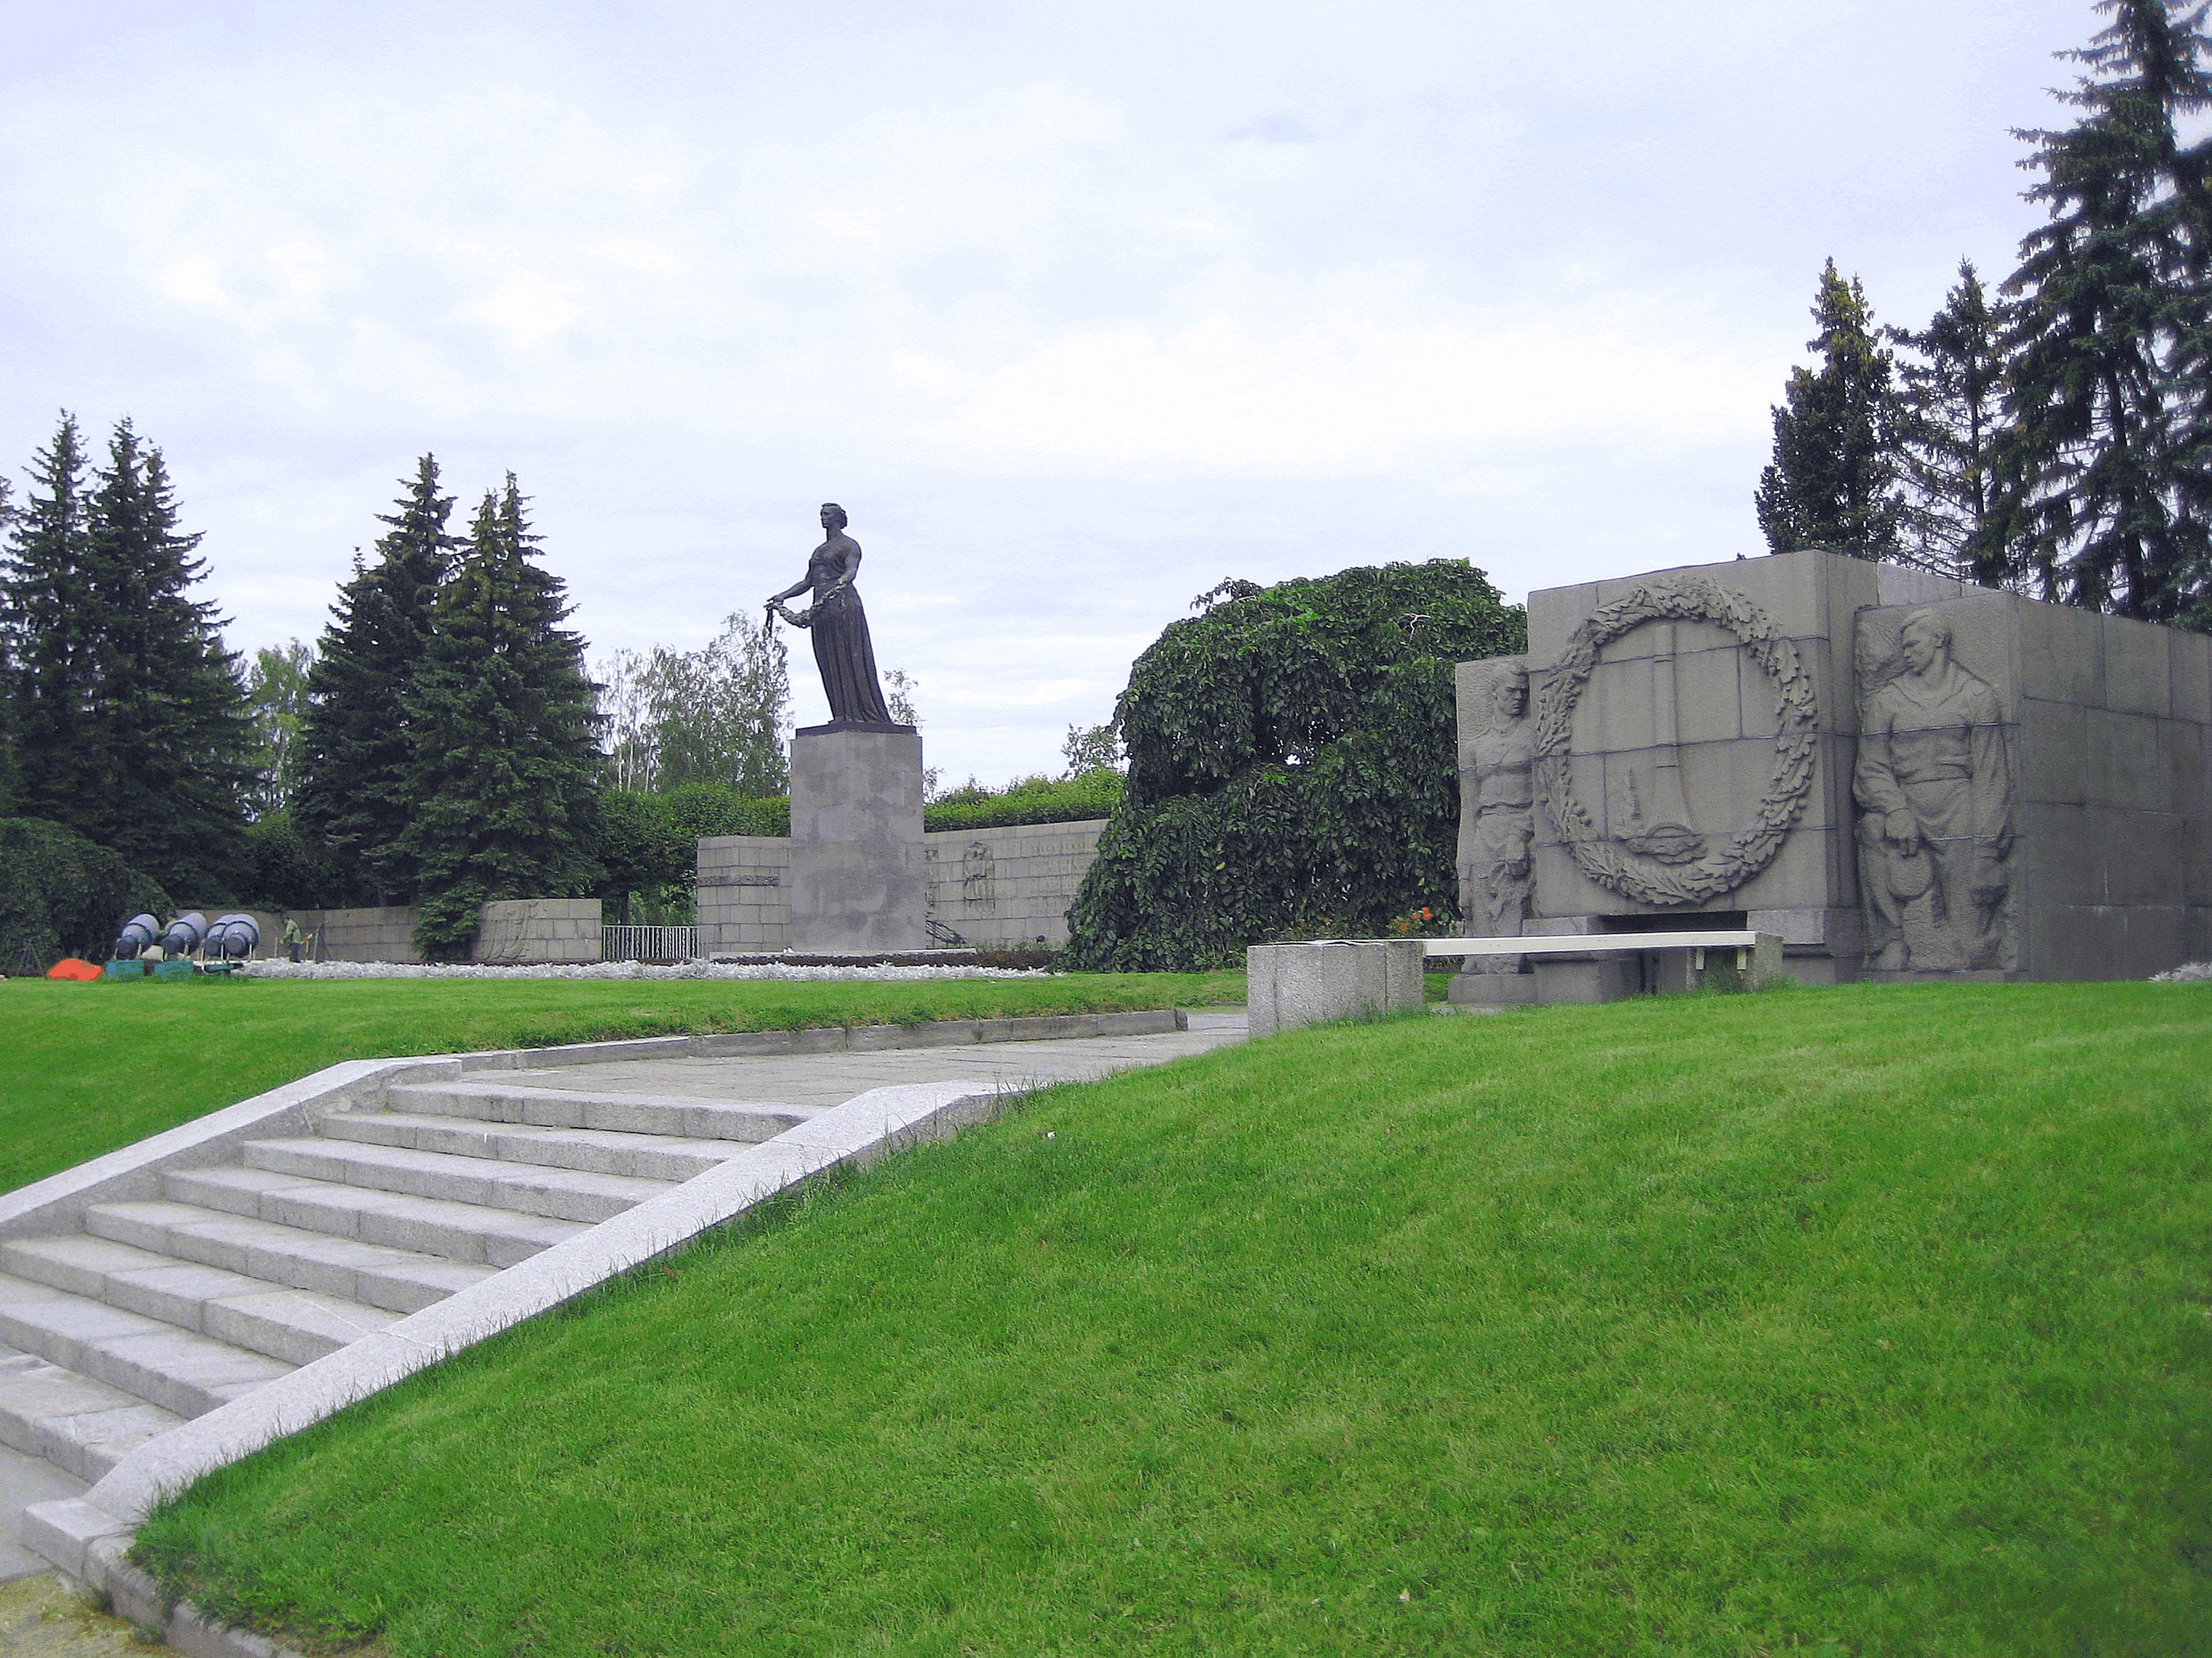 Музей пискаревского мемориального кладбища